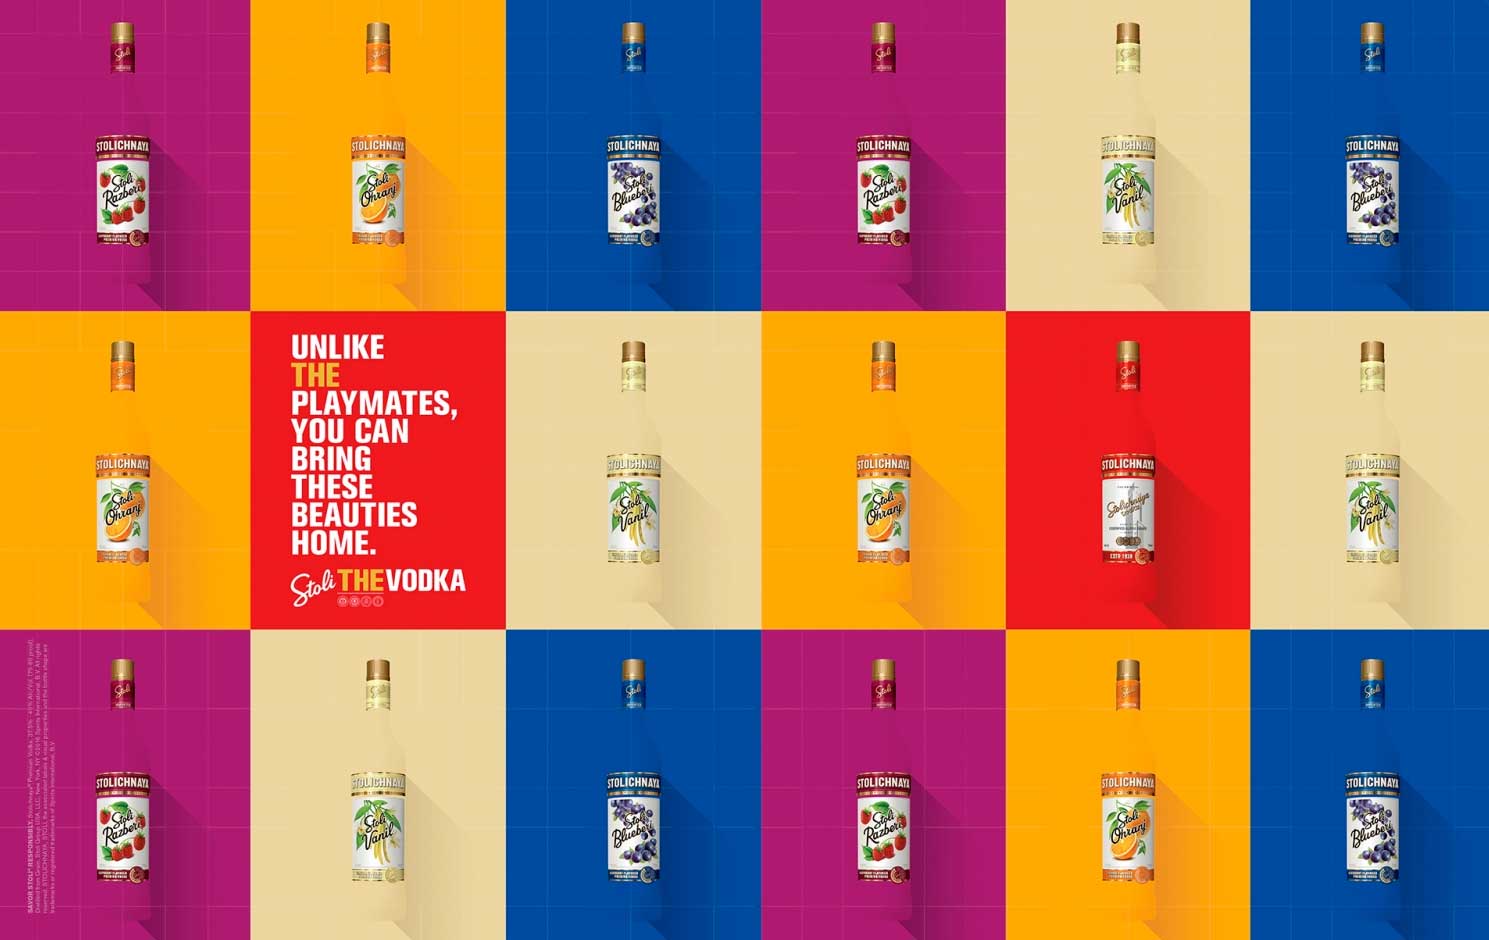 Best print ads 2016 stolichnaya vodka brand